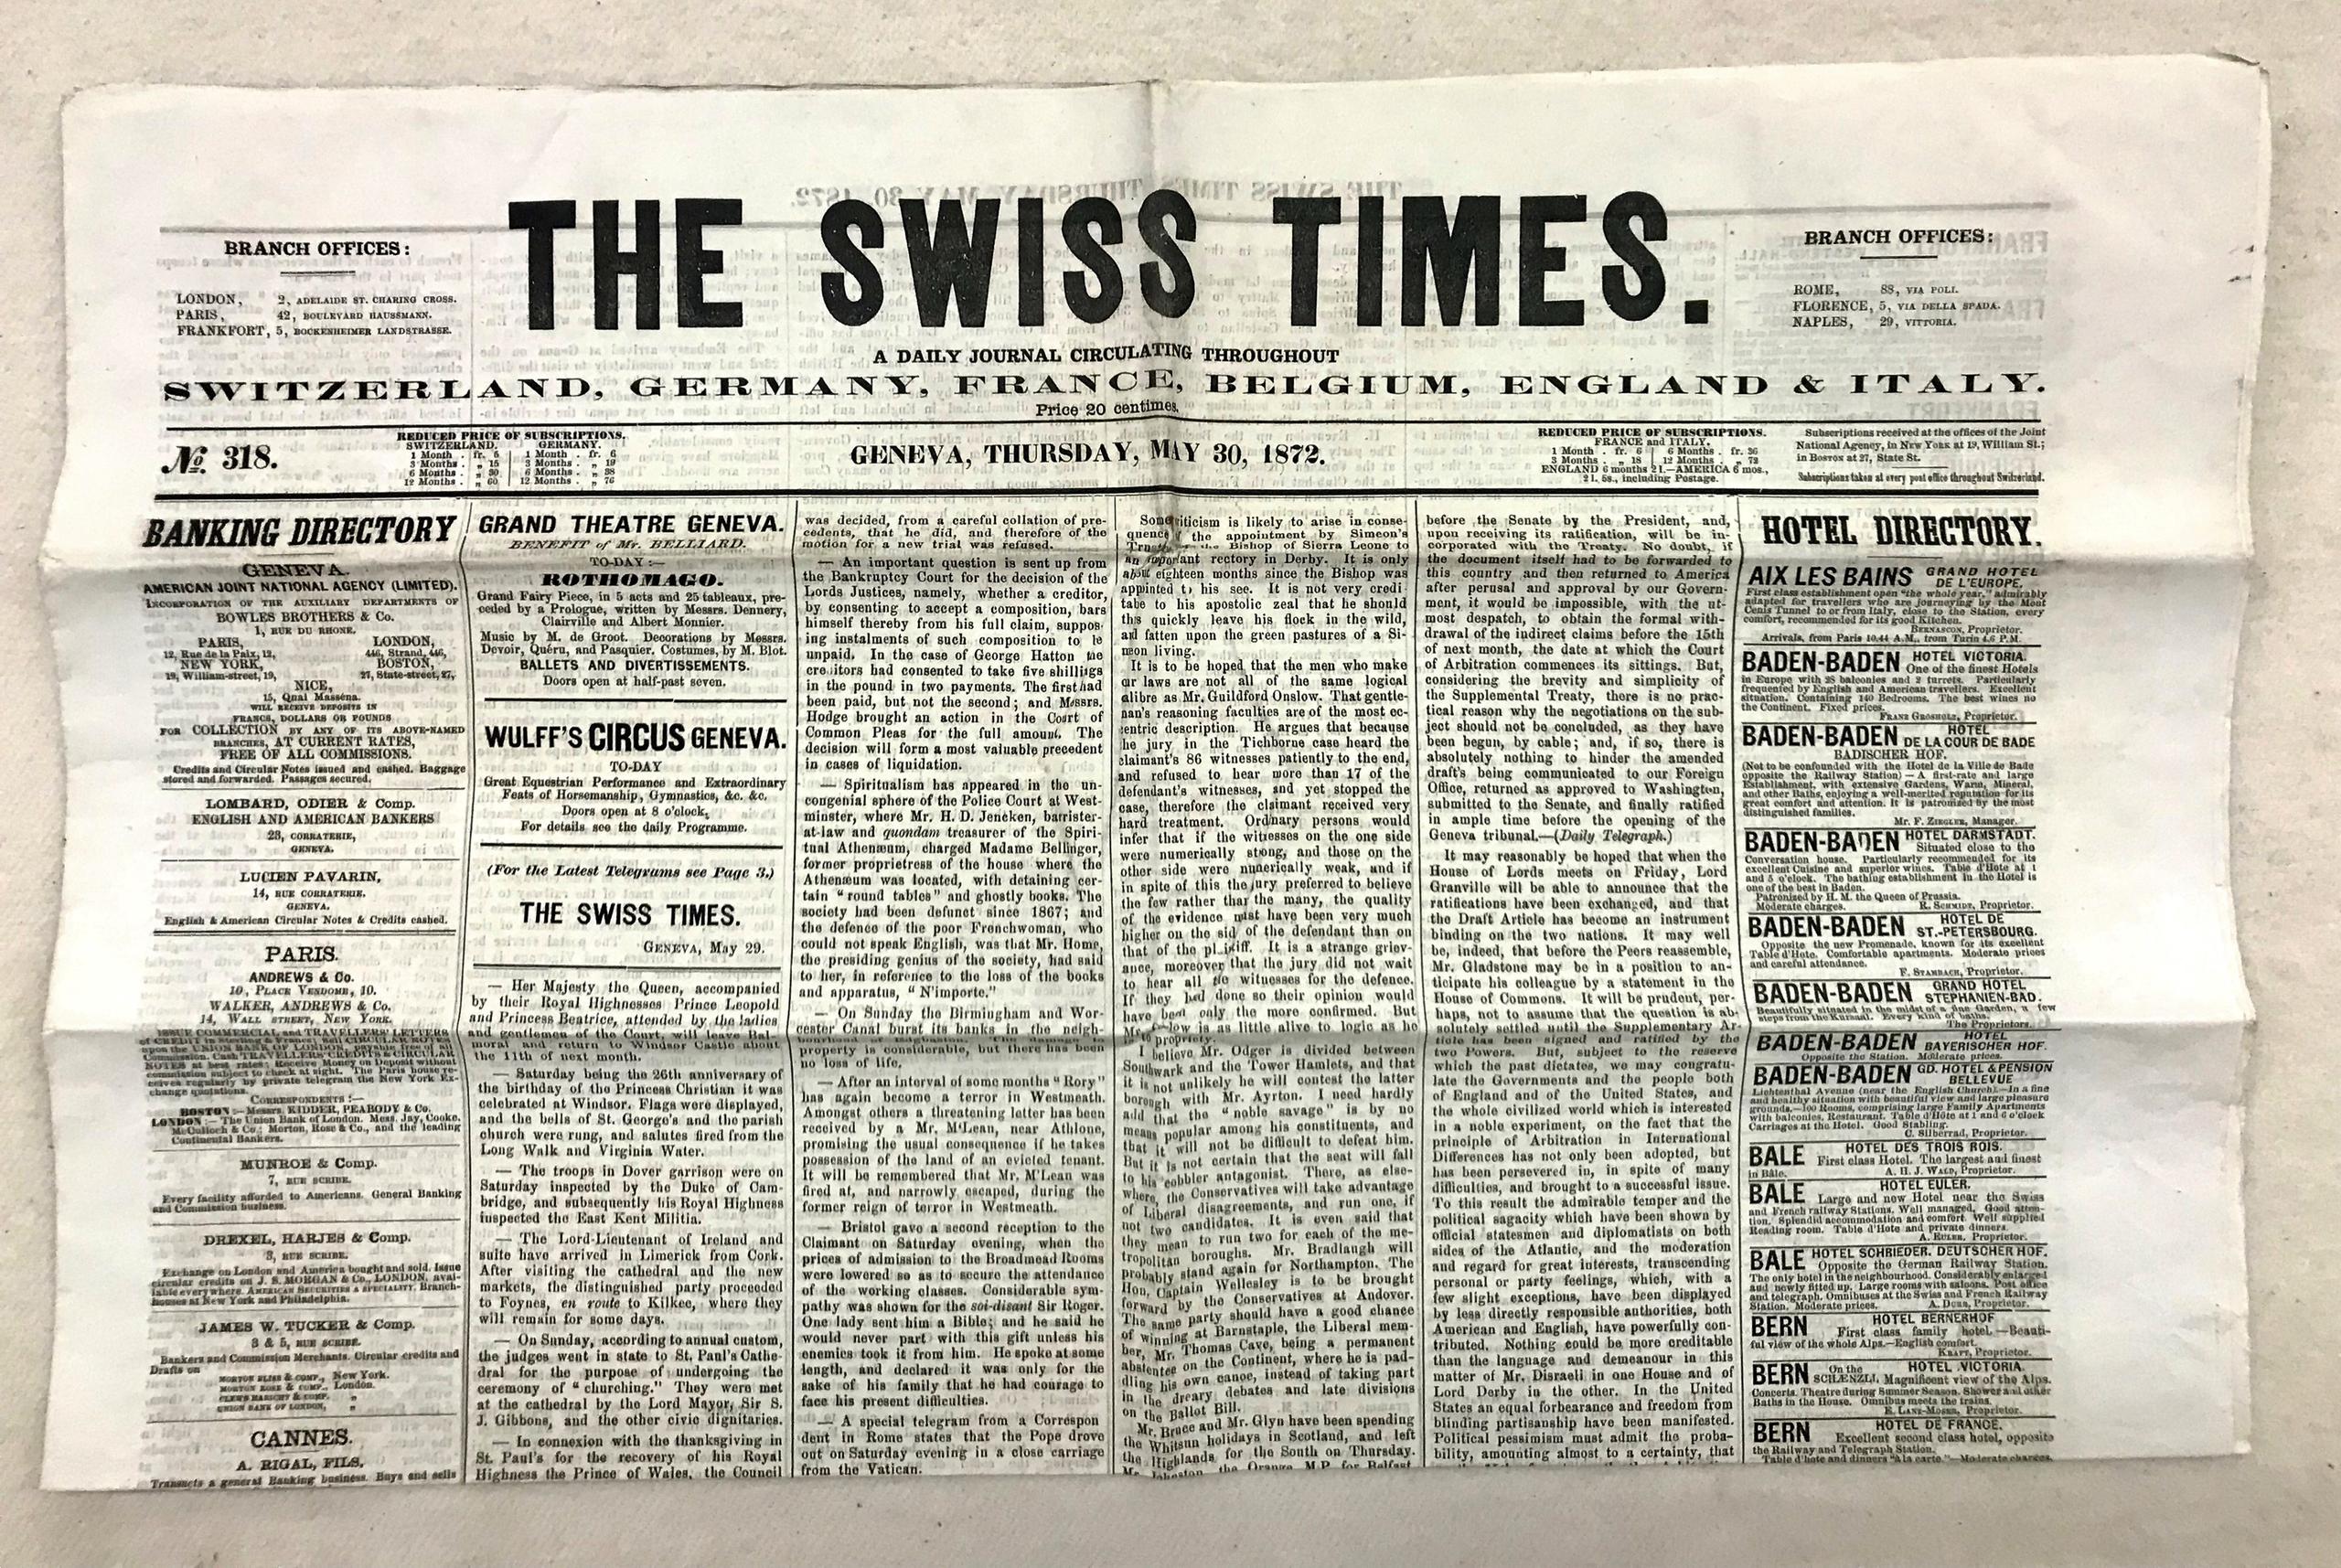 ジュネーブに住んだ米国人ジェームズ・ベイツが設立した新聞社「The Swiss Times」の新聞